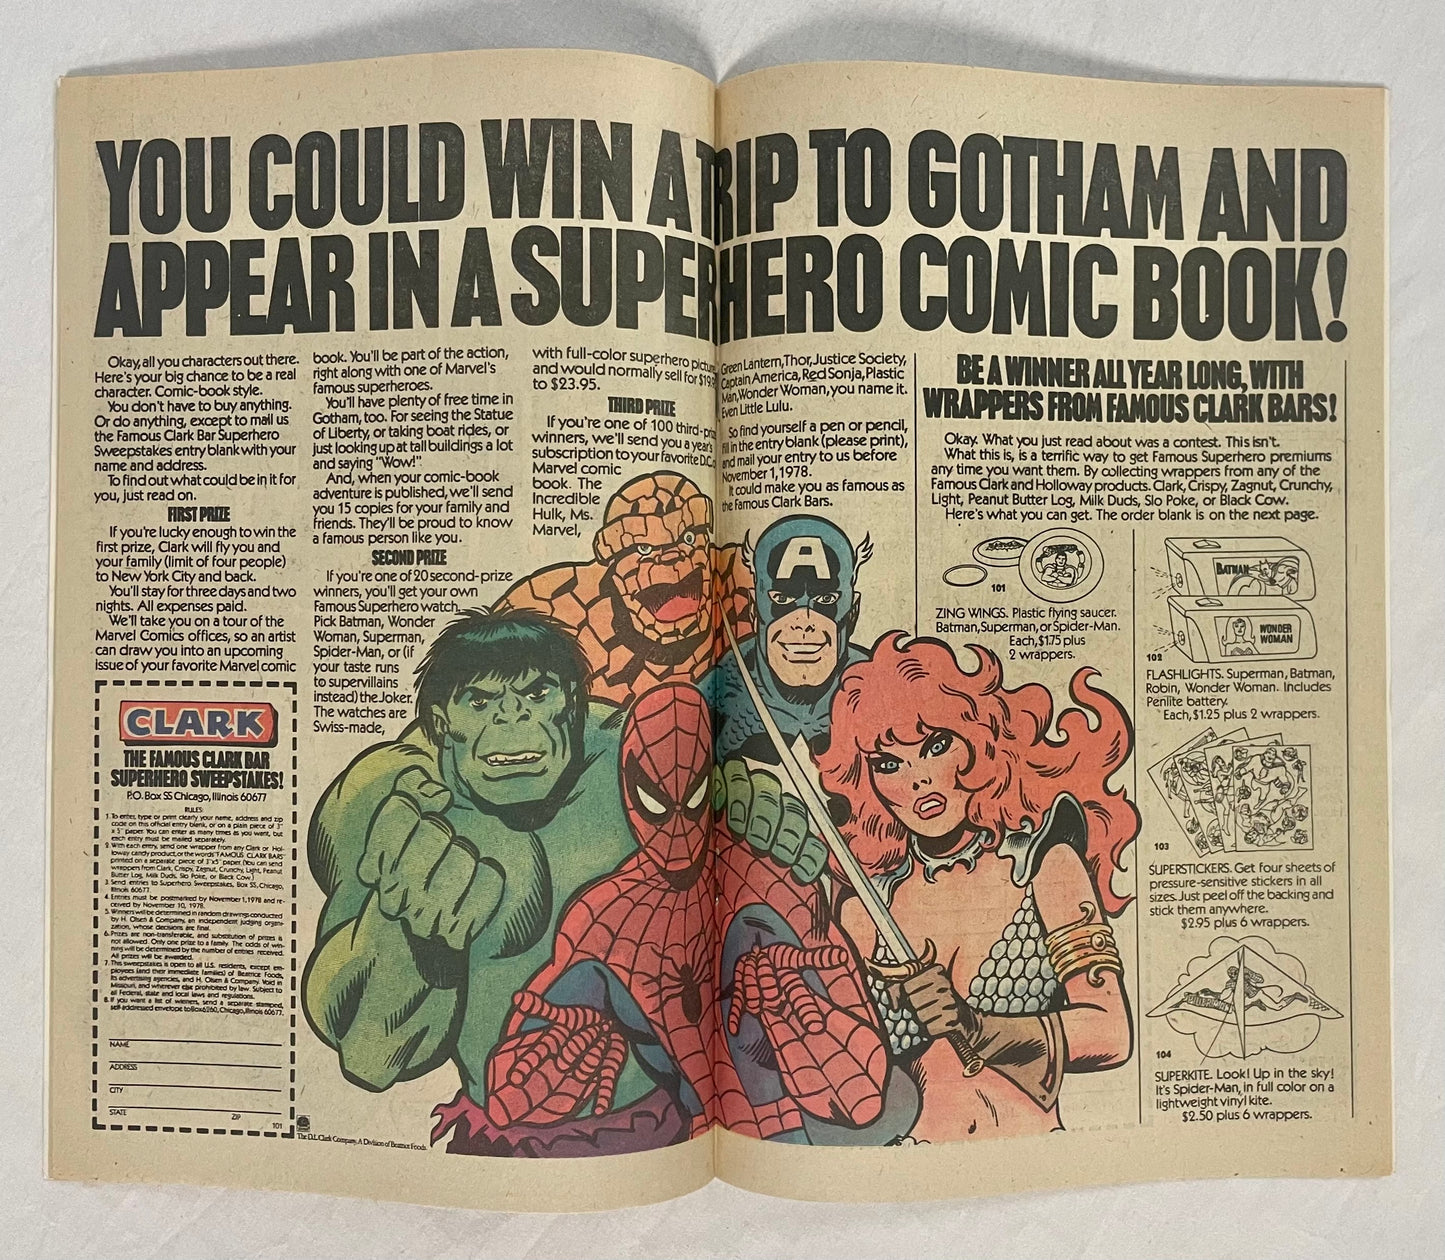 Marvel Comics Hanna-Barbera's Laff-A-Lympics #5